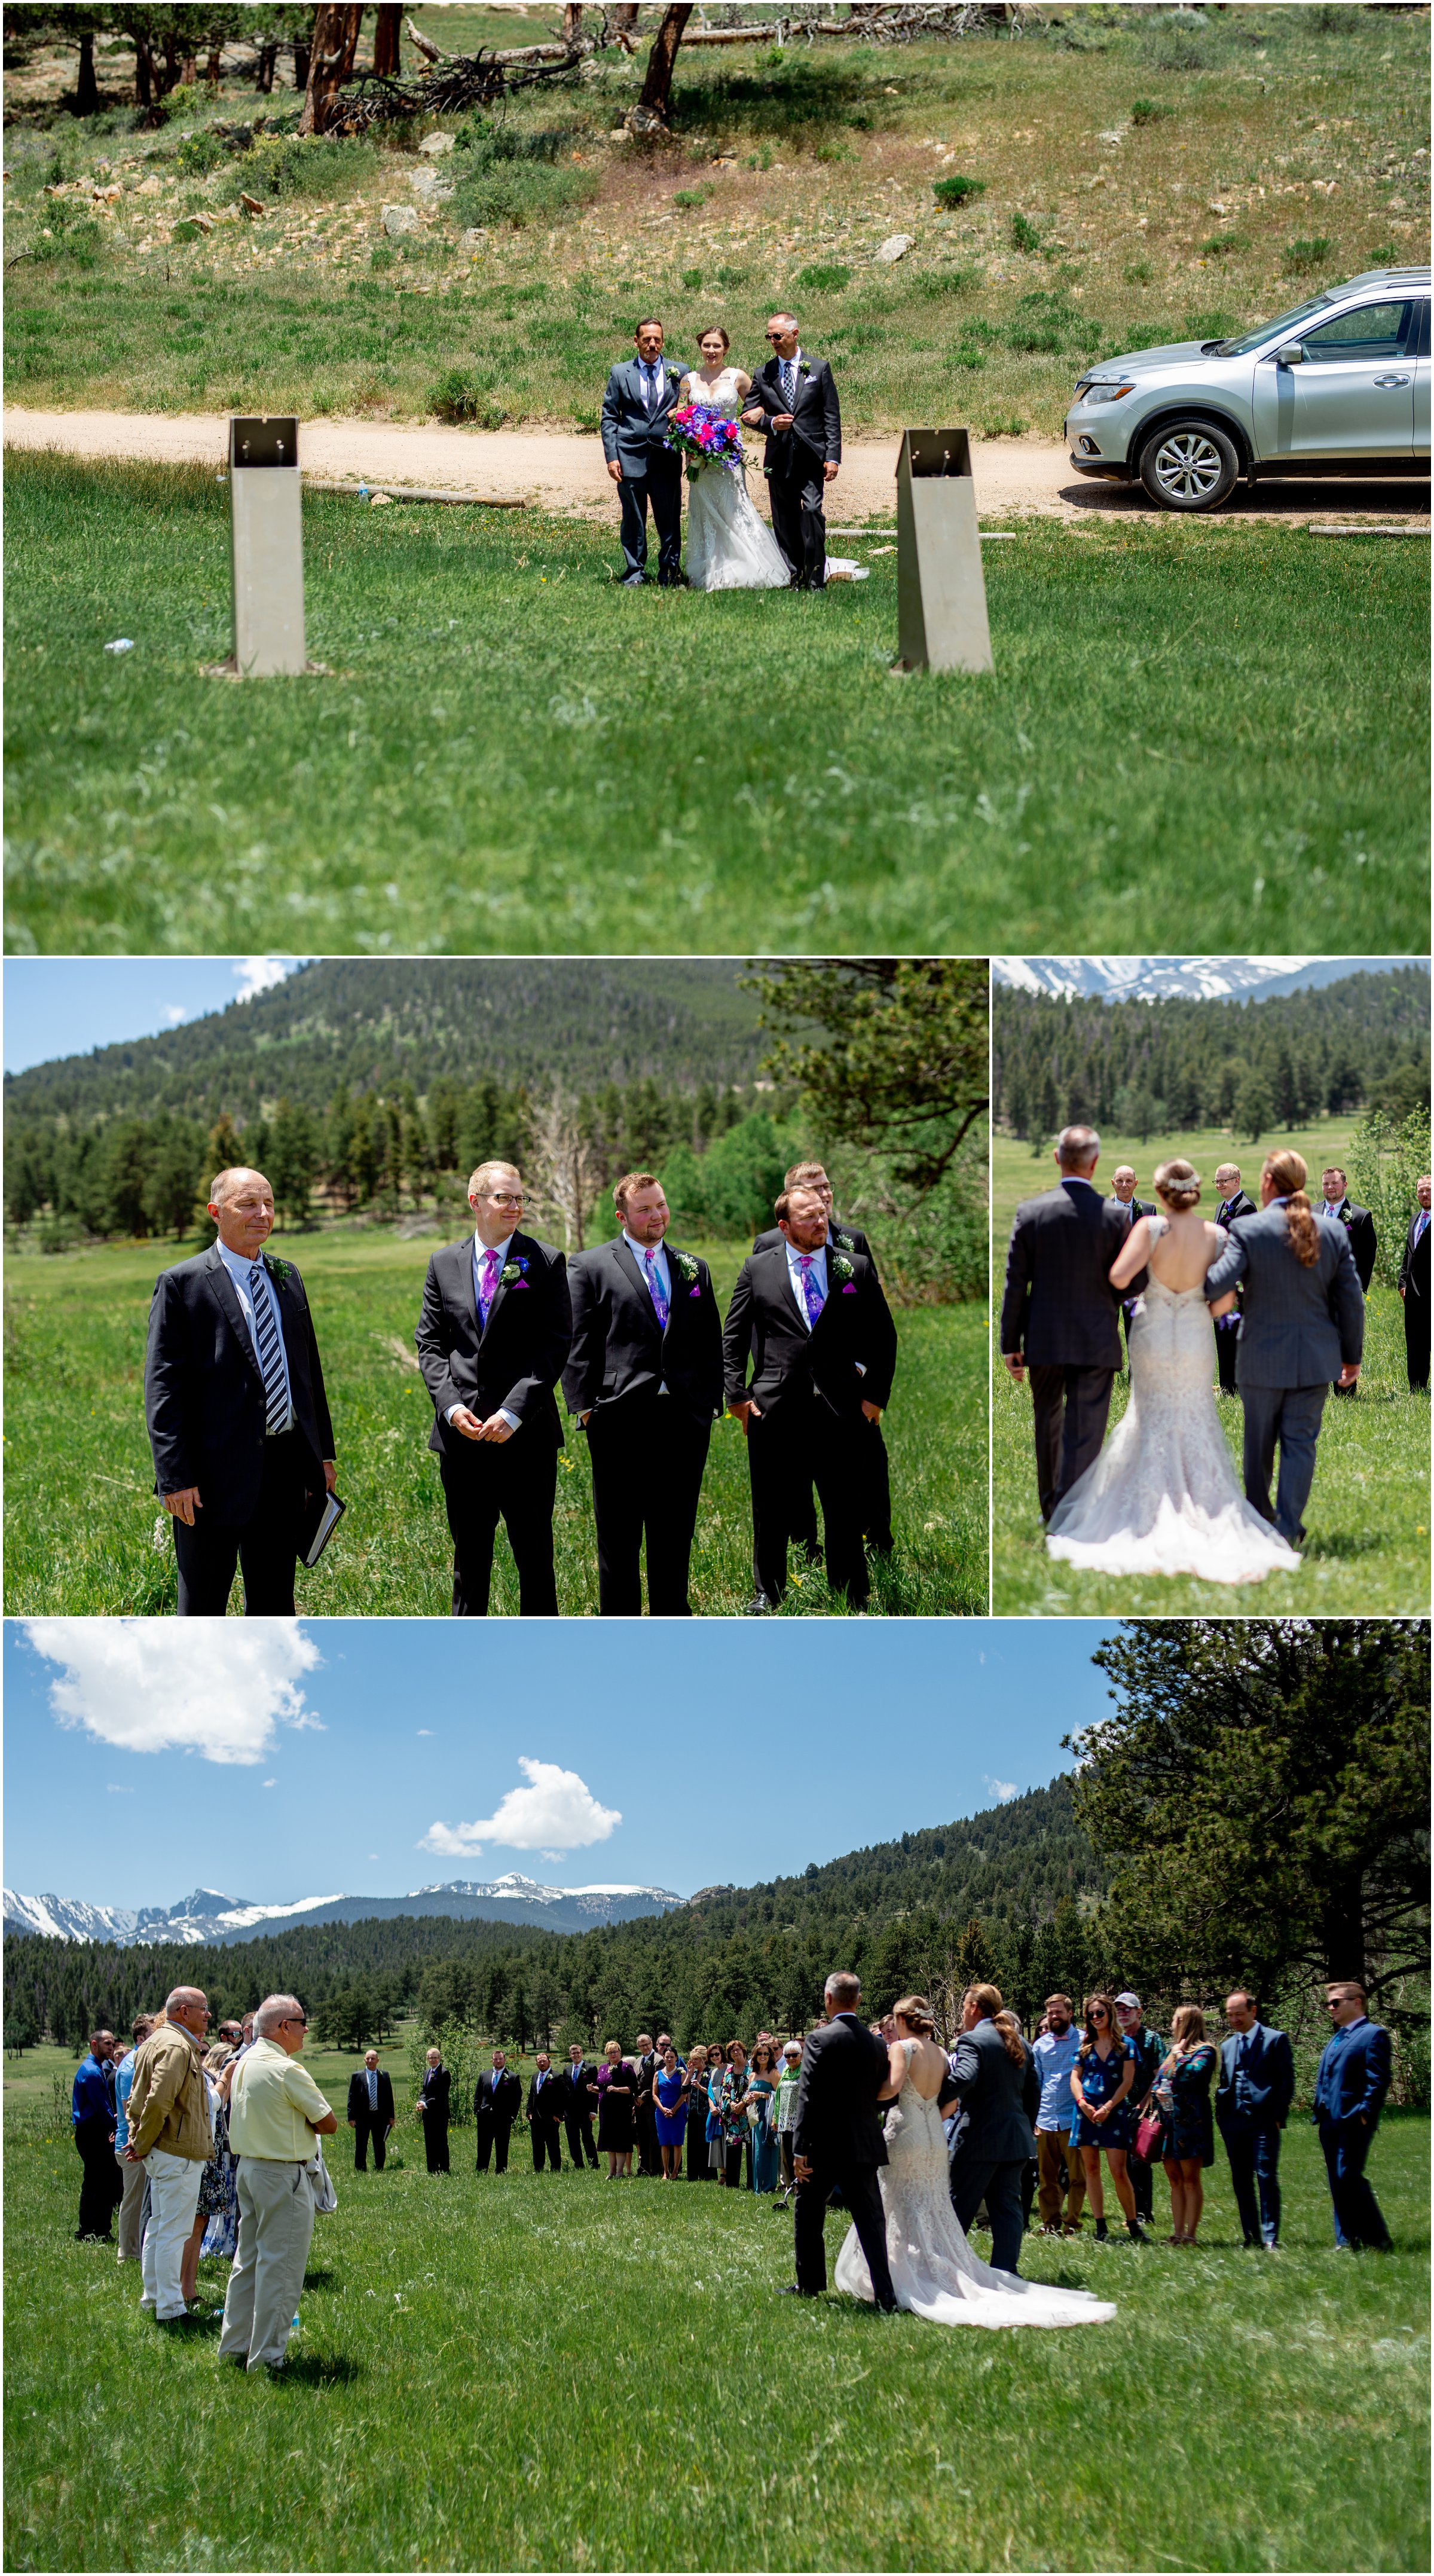 RMNP wedding near Estes Park Colorado